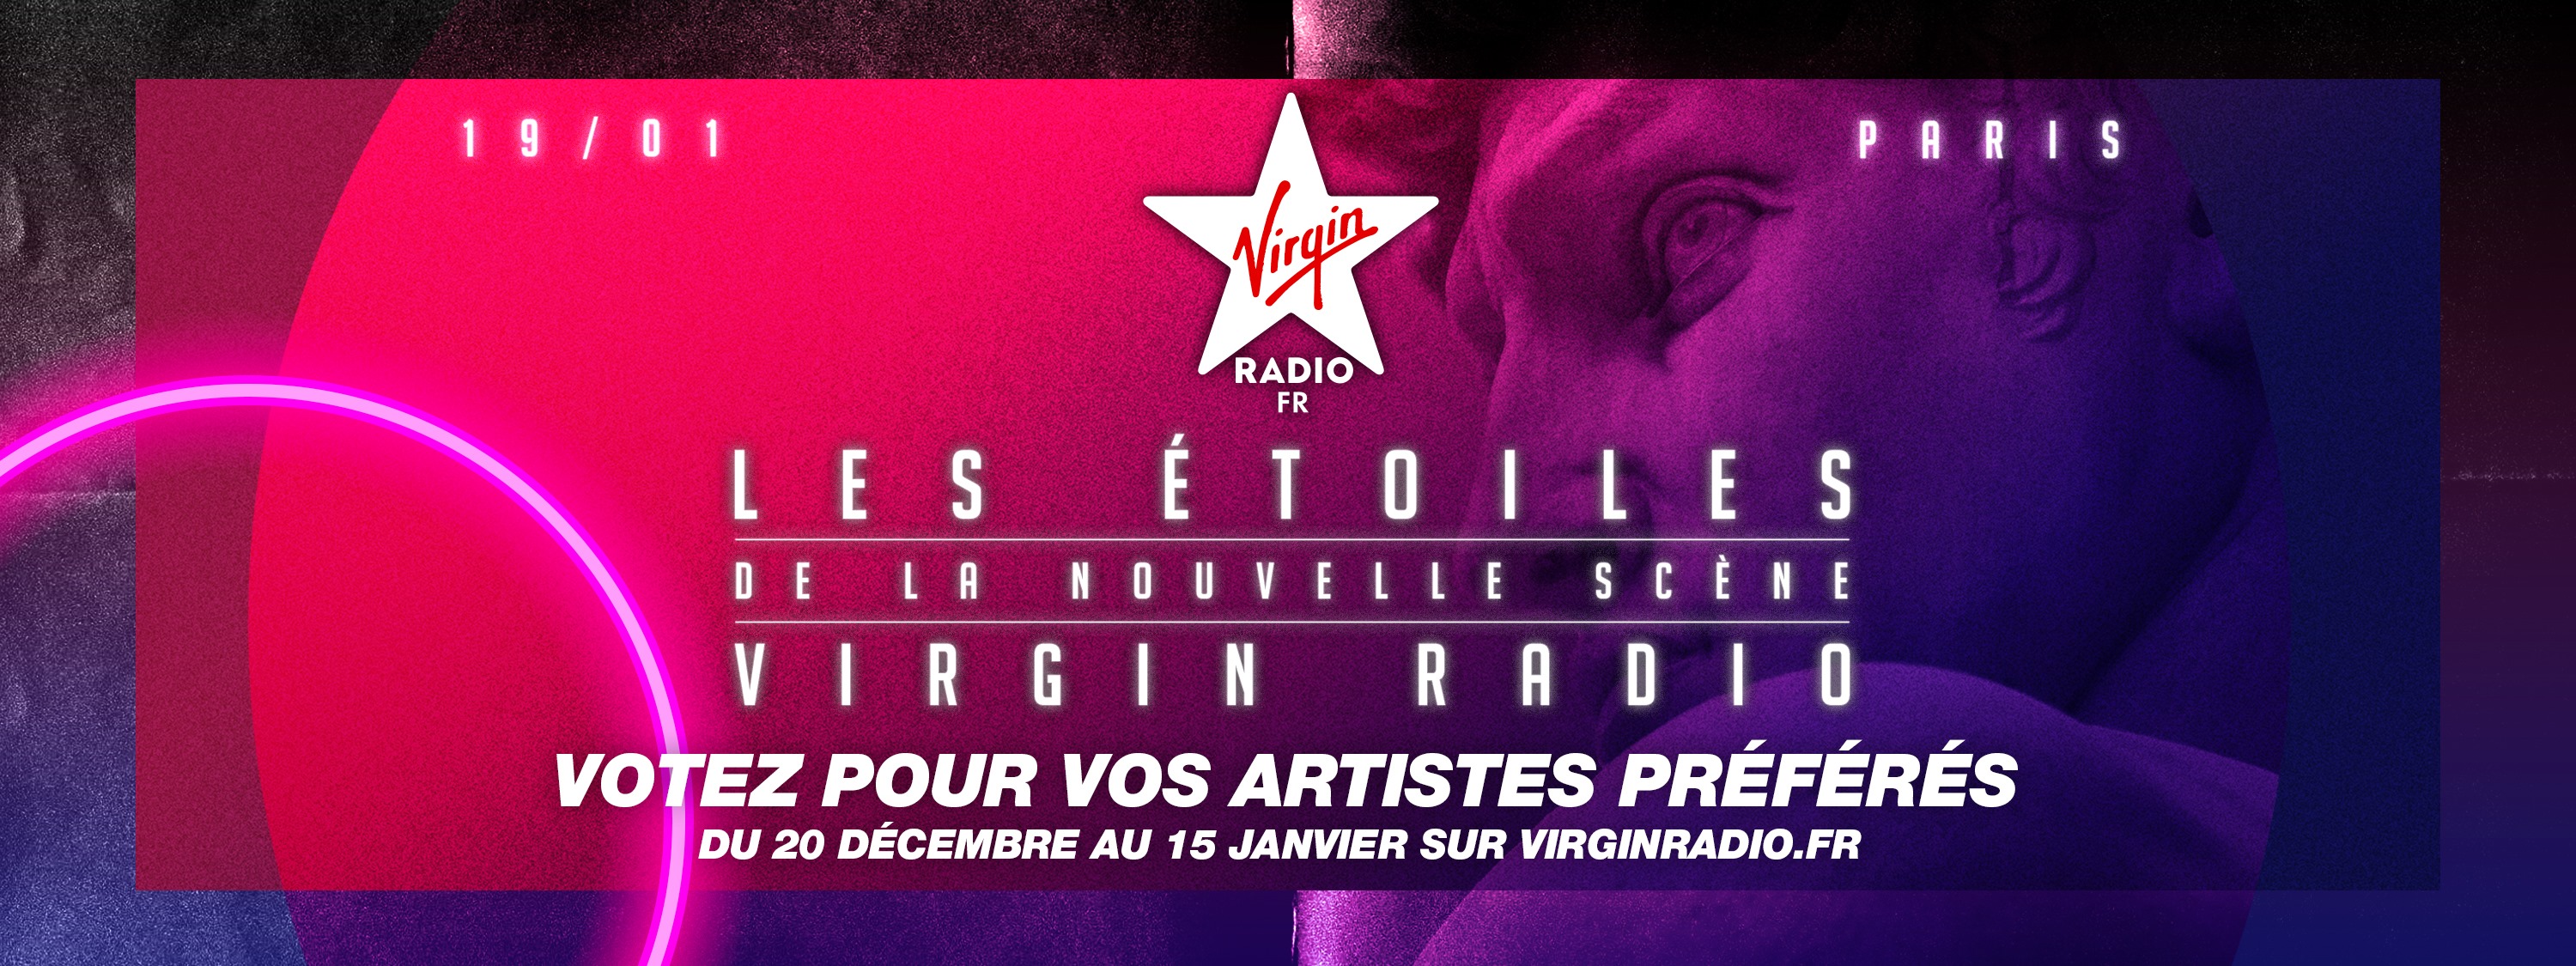 Virgin Radio organise "Les Étoiles de la nouvelle scène"